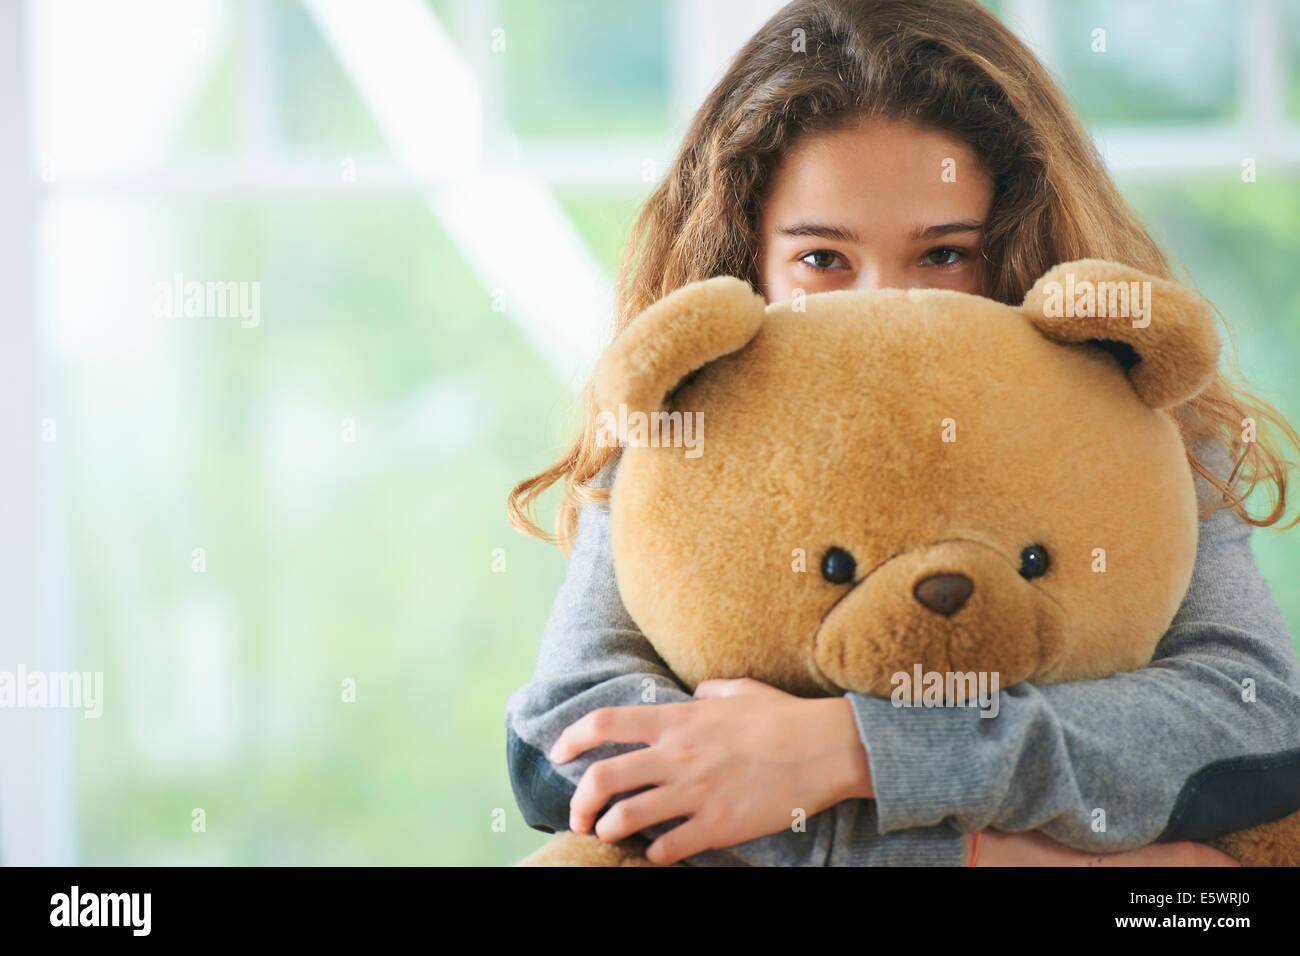 Retrato de joven abrazando a Teddy bear Foto de stock